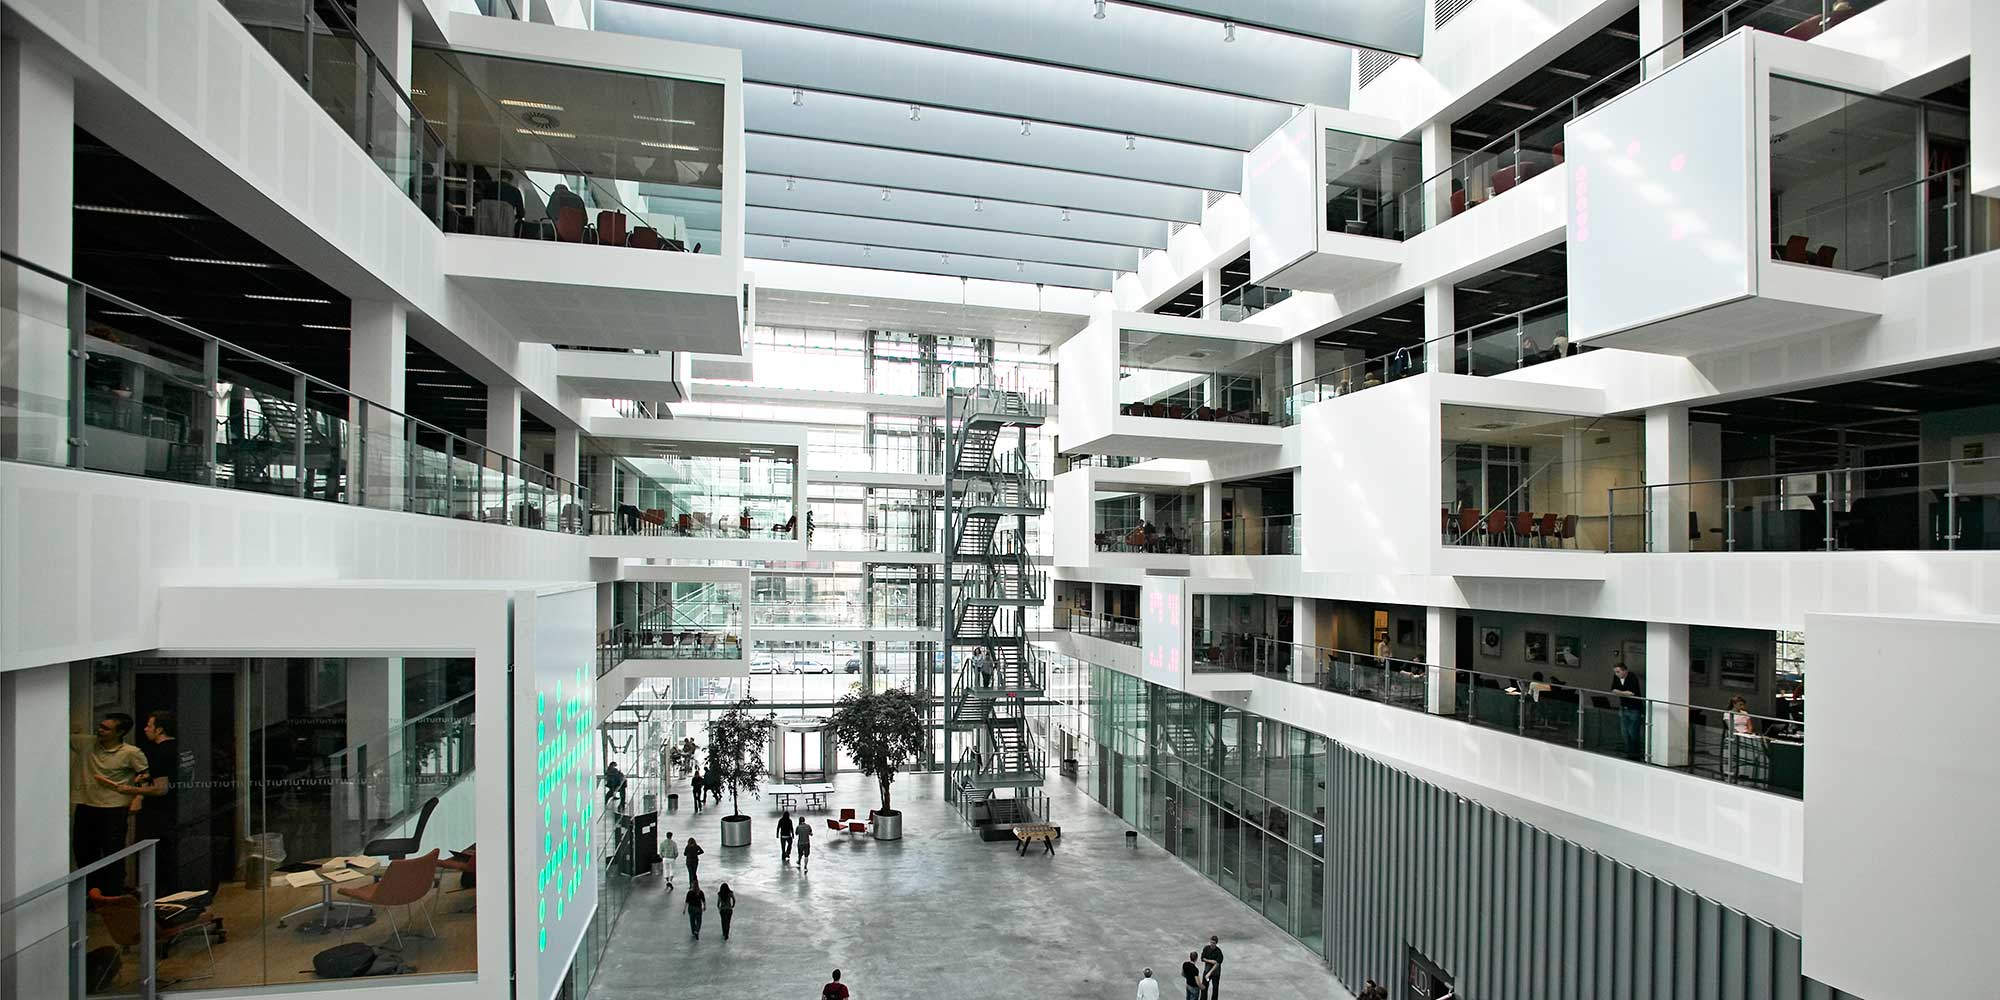 IT University of Copenhagen